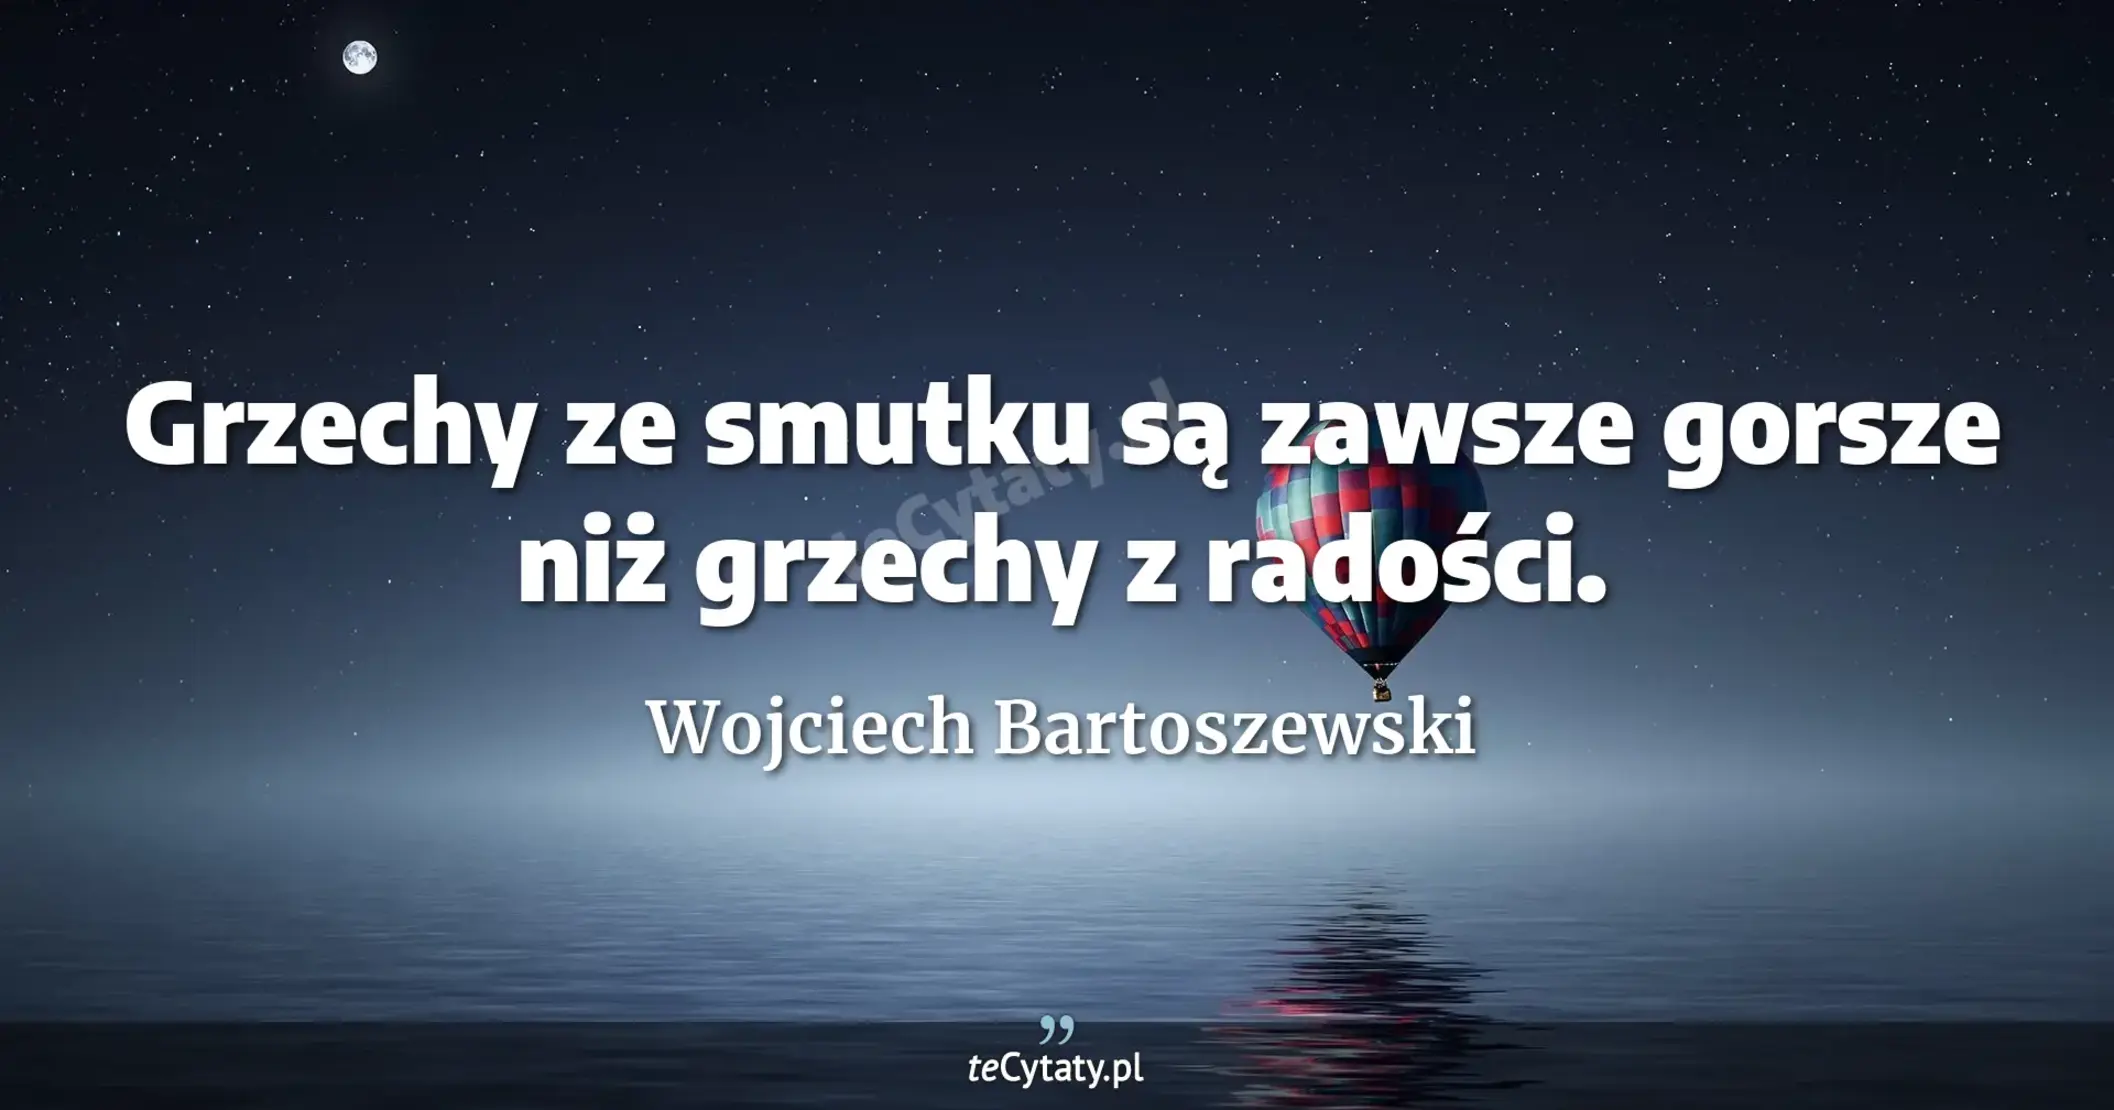 Grzechy ze smutku są zawsze gorsze niż grzechy z radości. - Wojciech Bartoszewski